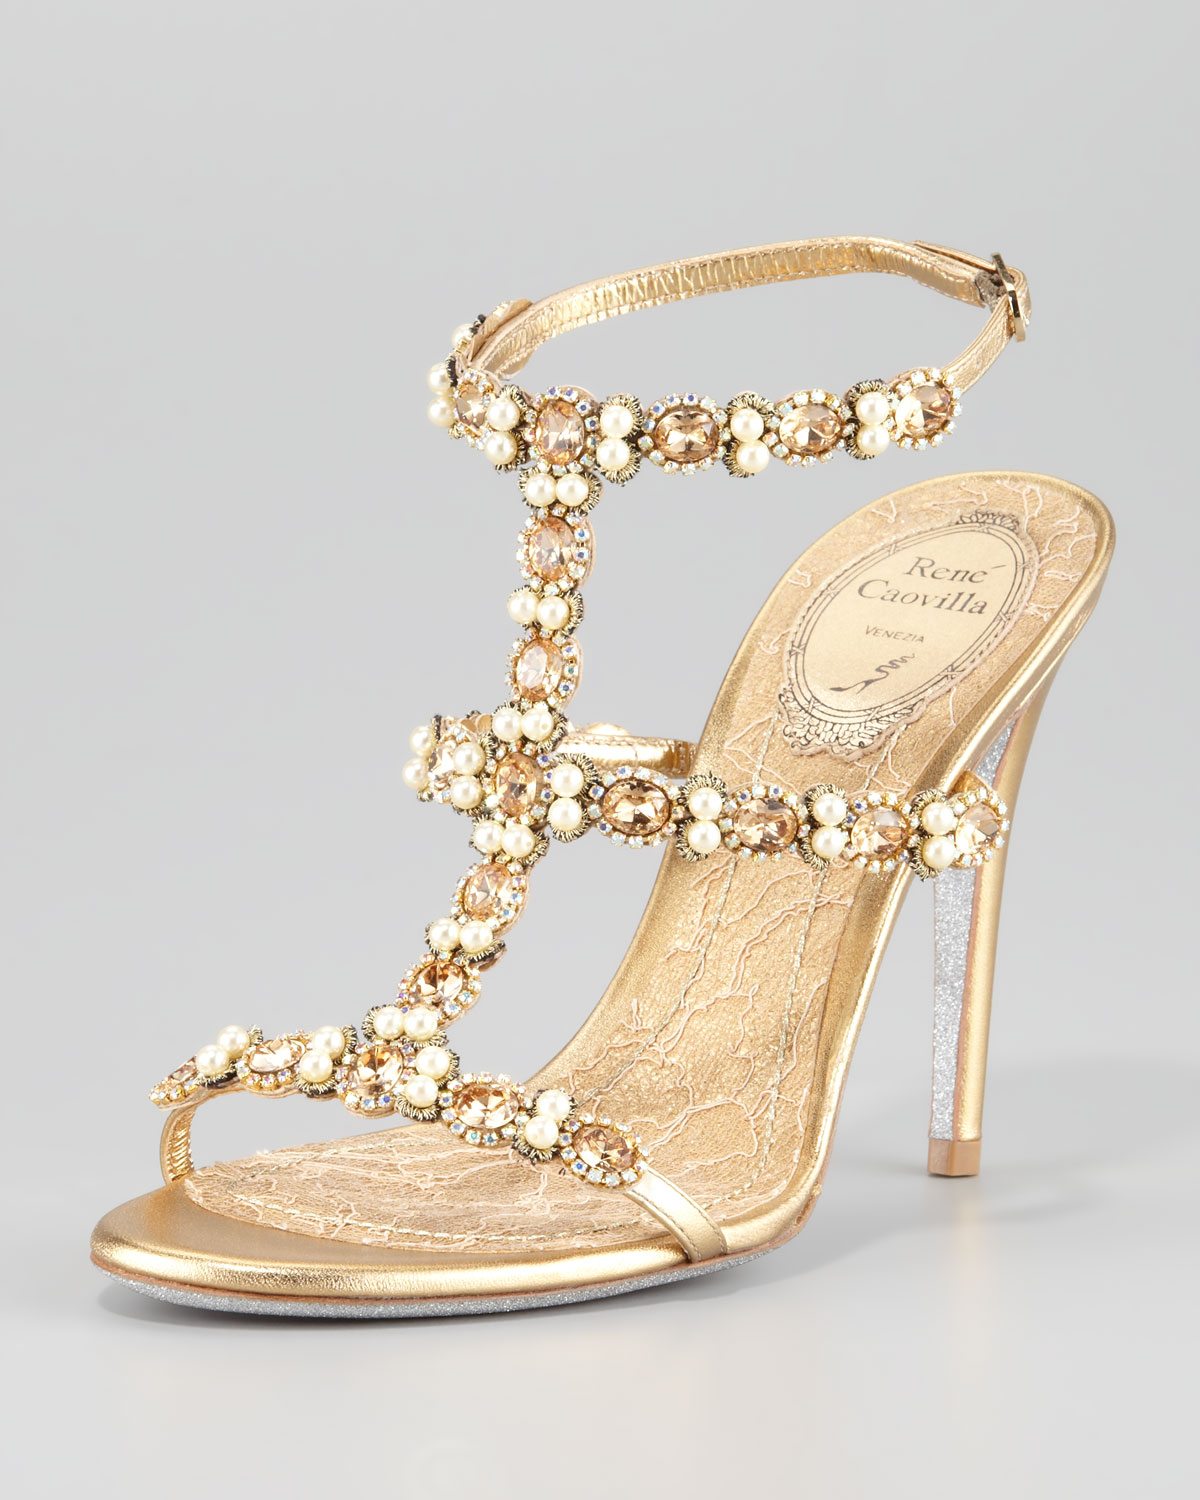 Lyst - Rene caovilla Bejeweled Tstrap Sandal in Metallic